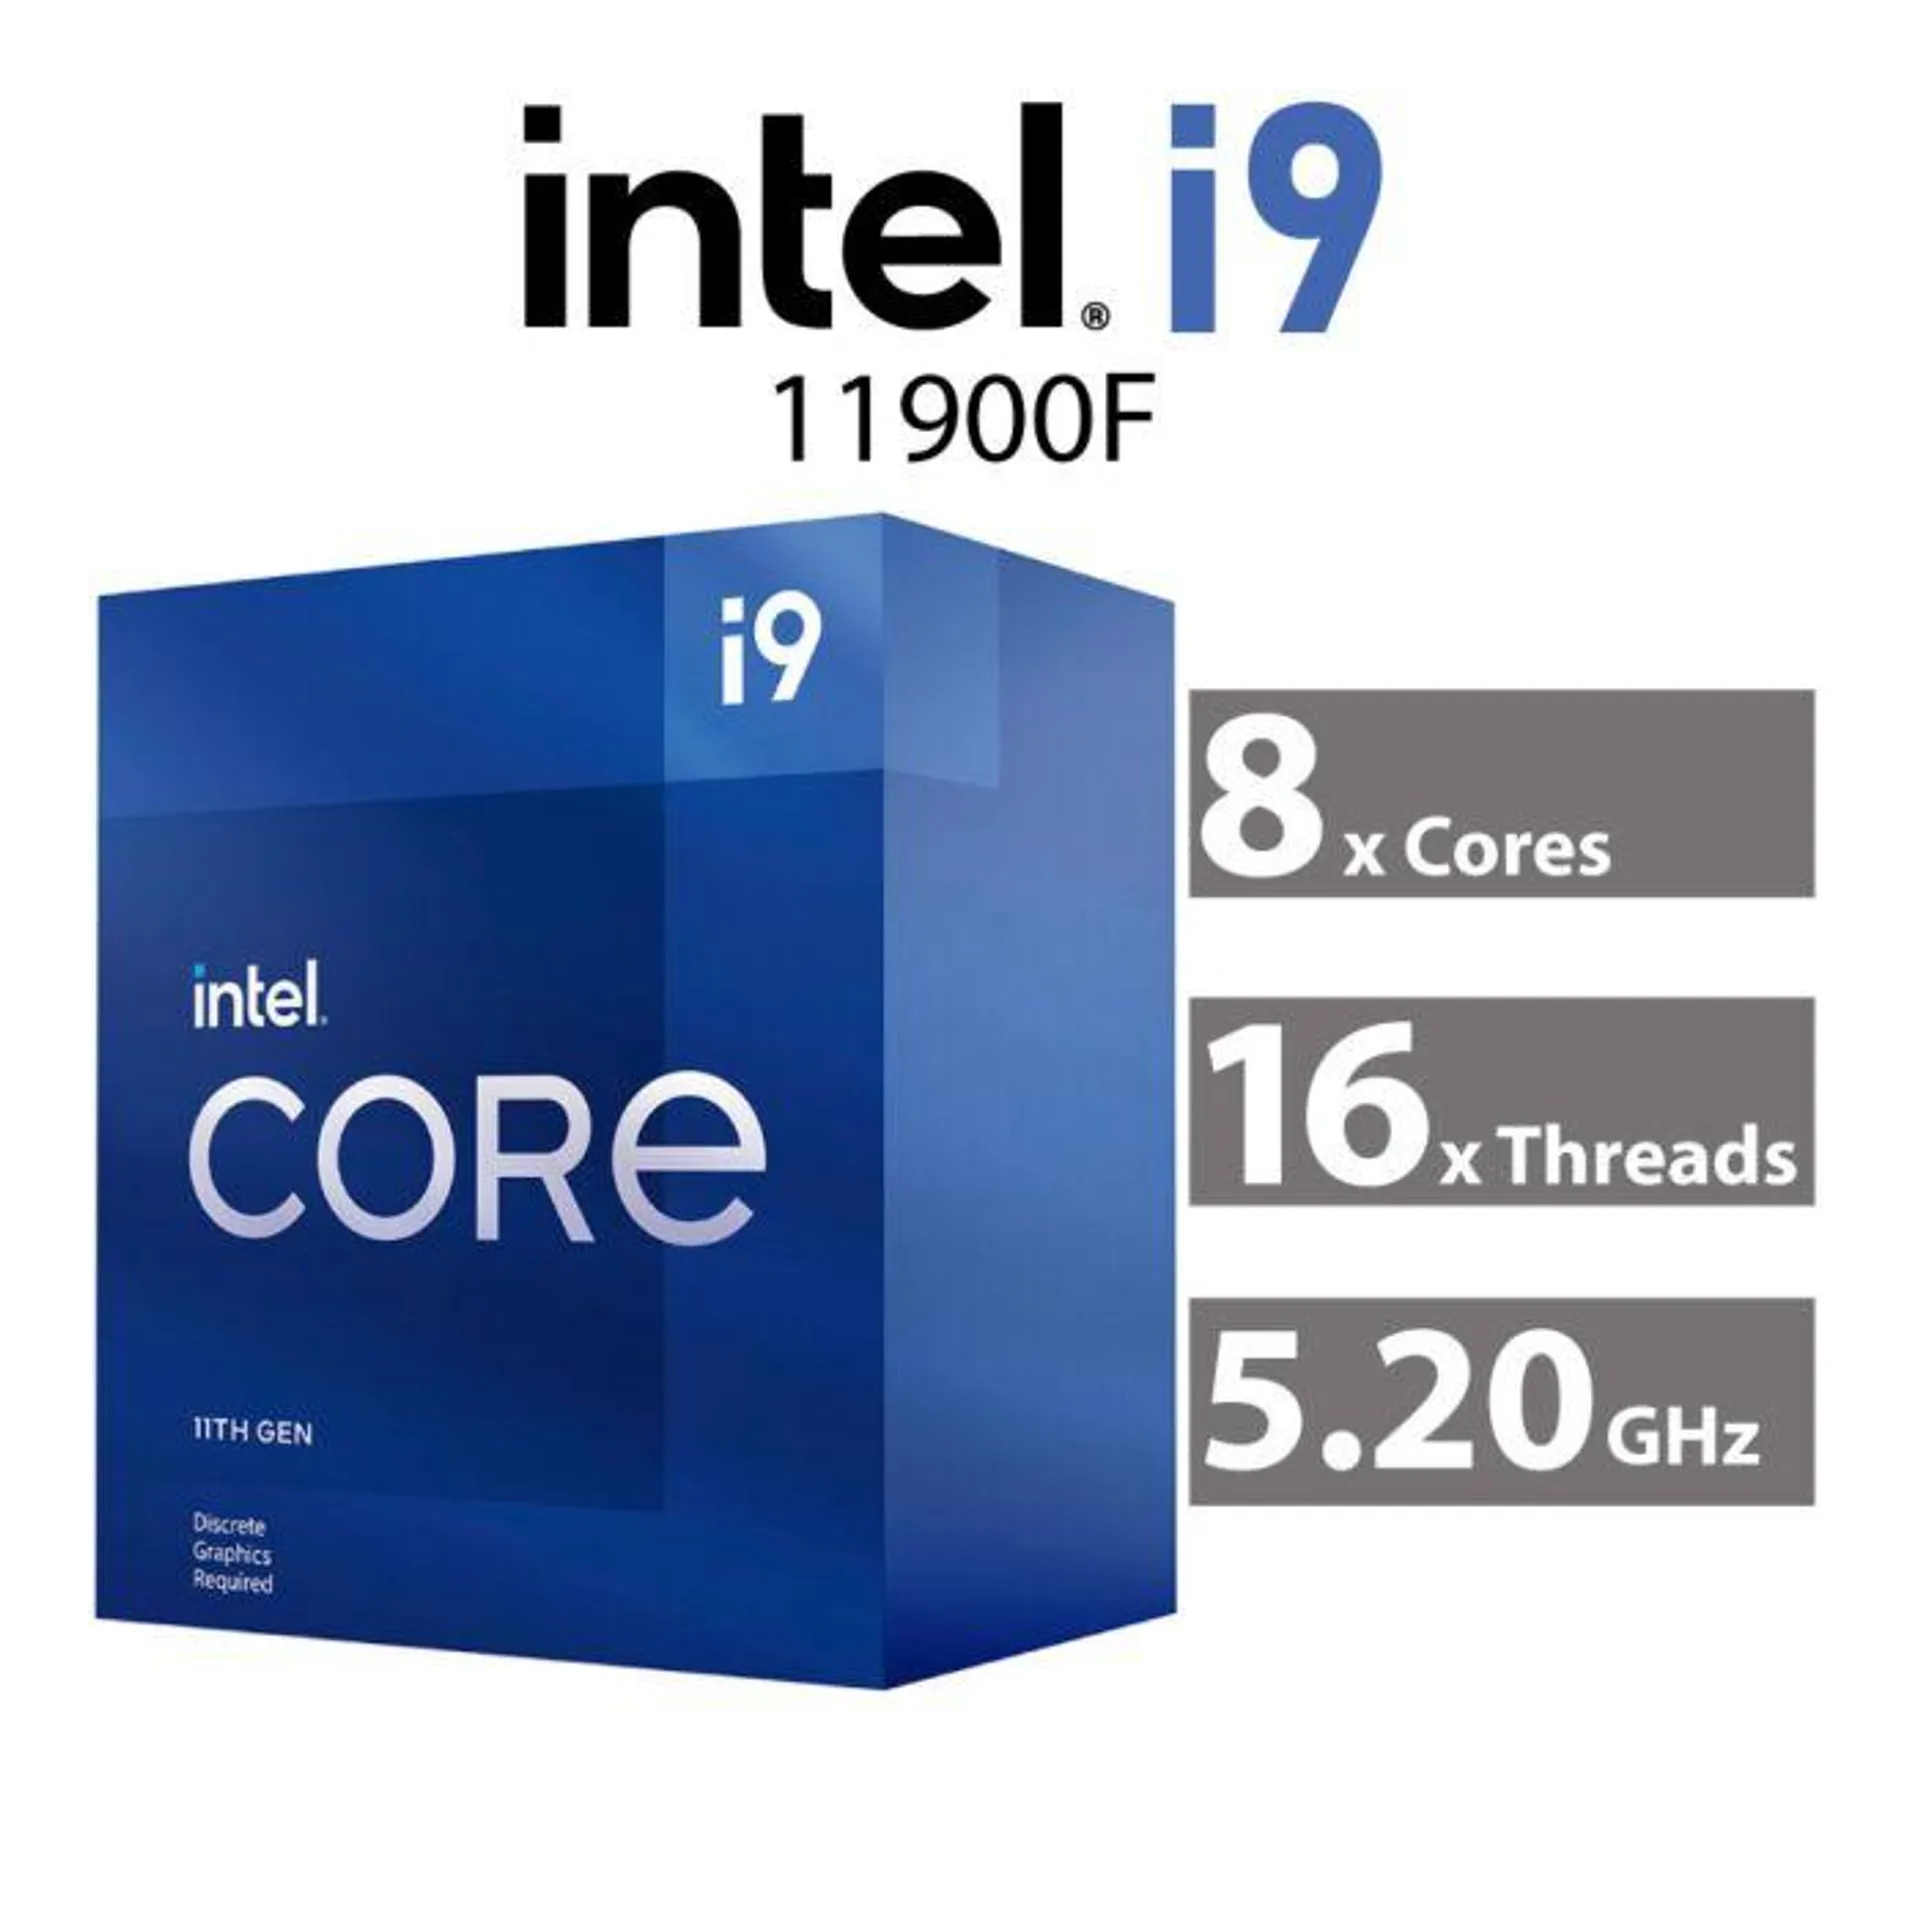 Intel Core i9-11900F Rocket Lake 8-Core 2.50GHz LGA1200 65W BX8070811900F Desktop Processor